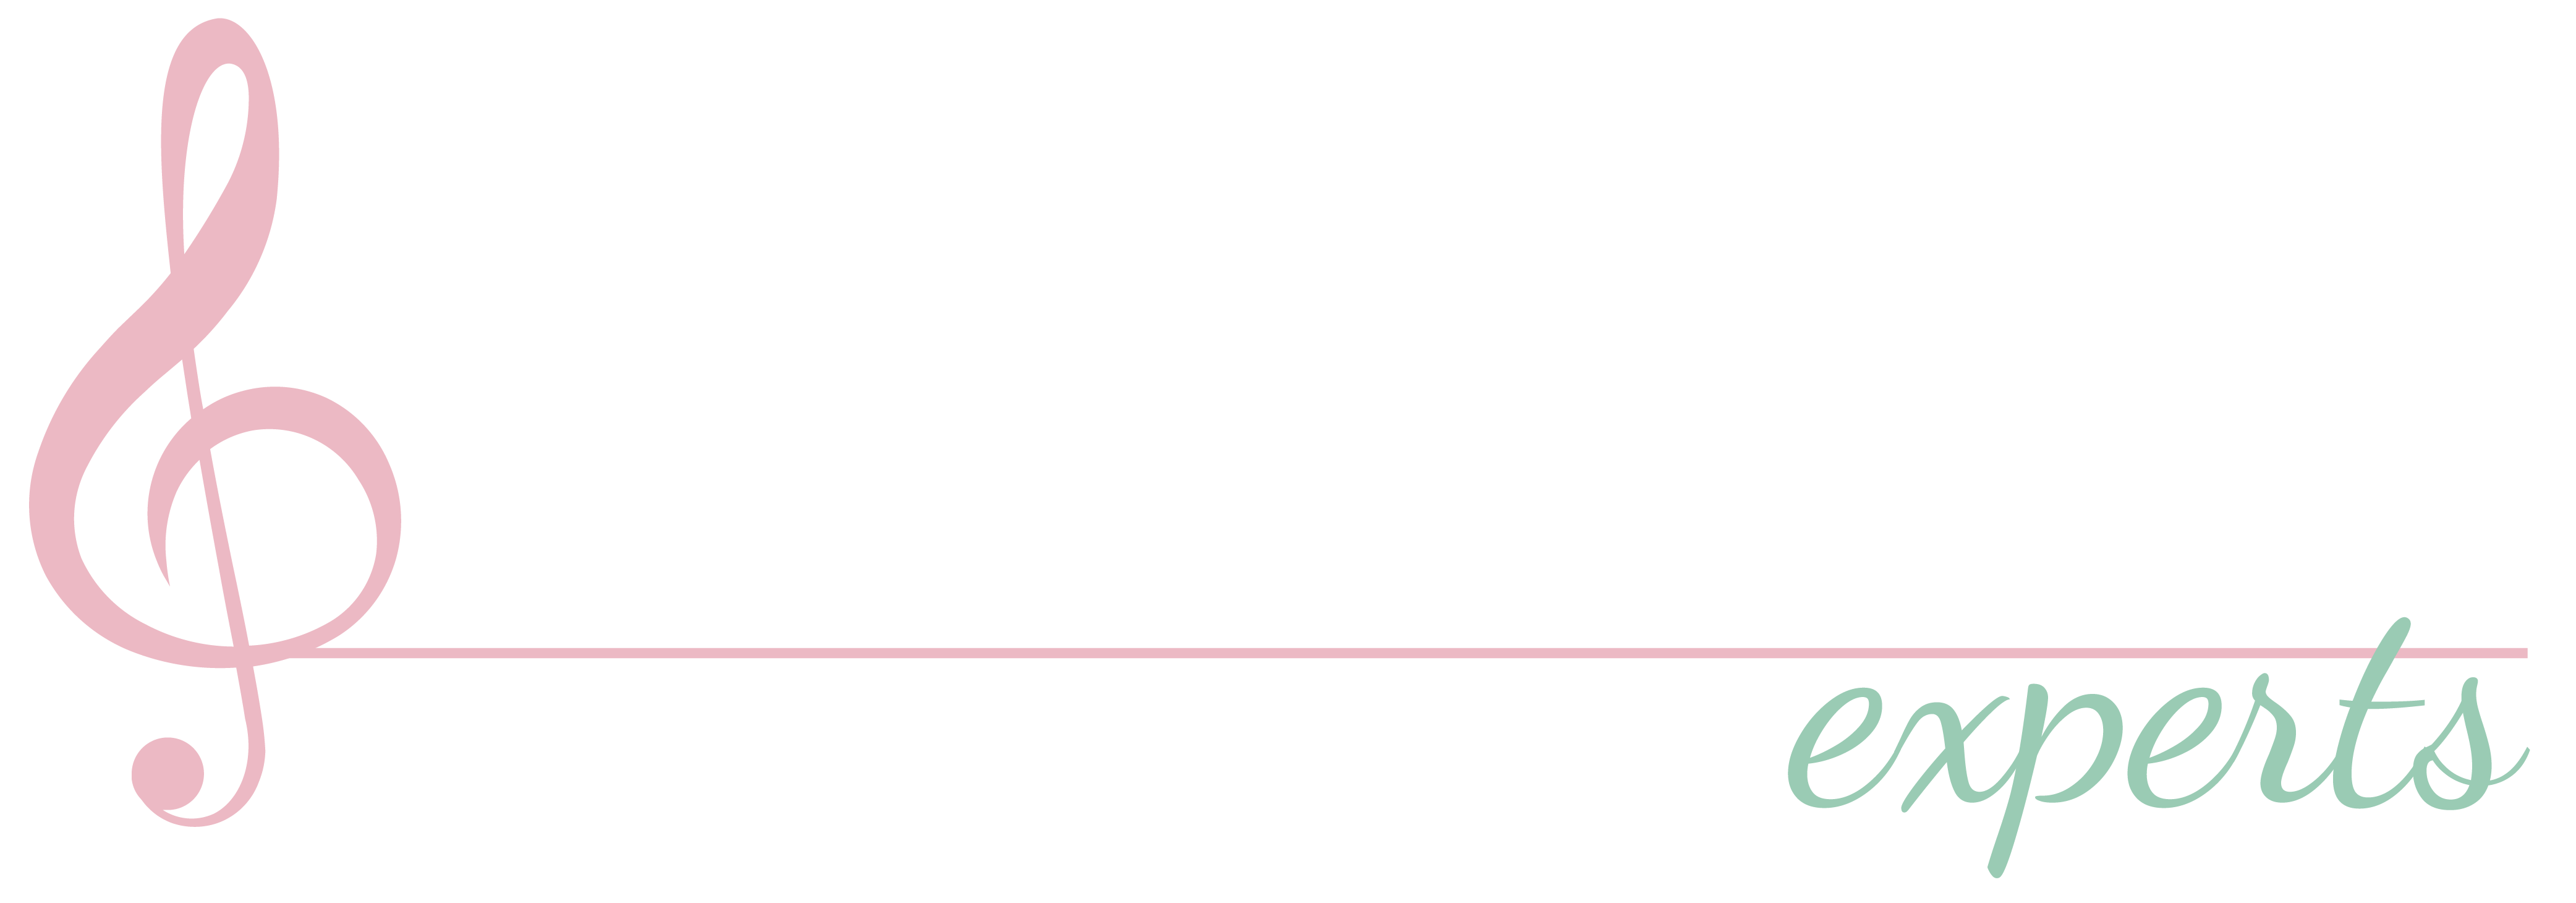 Full Voice Studio 02